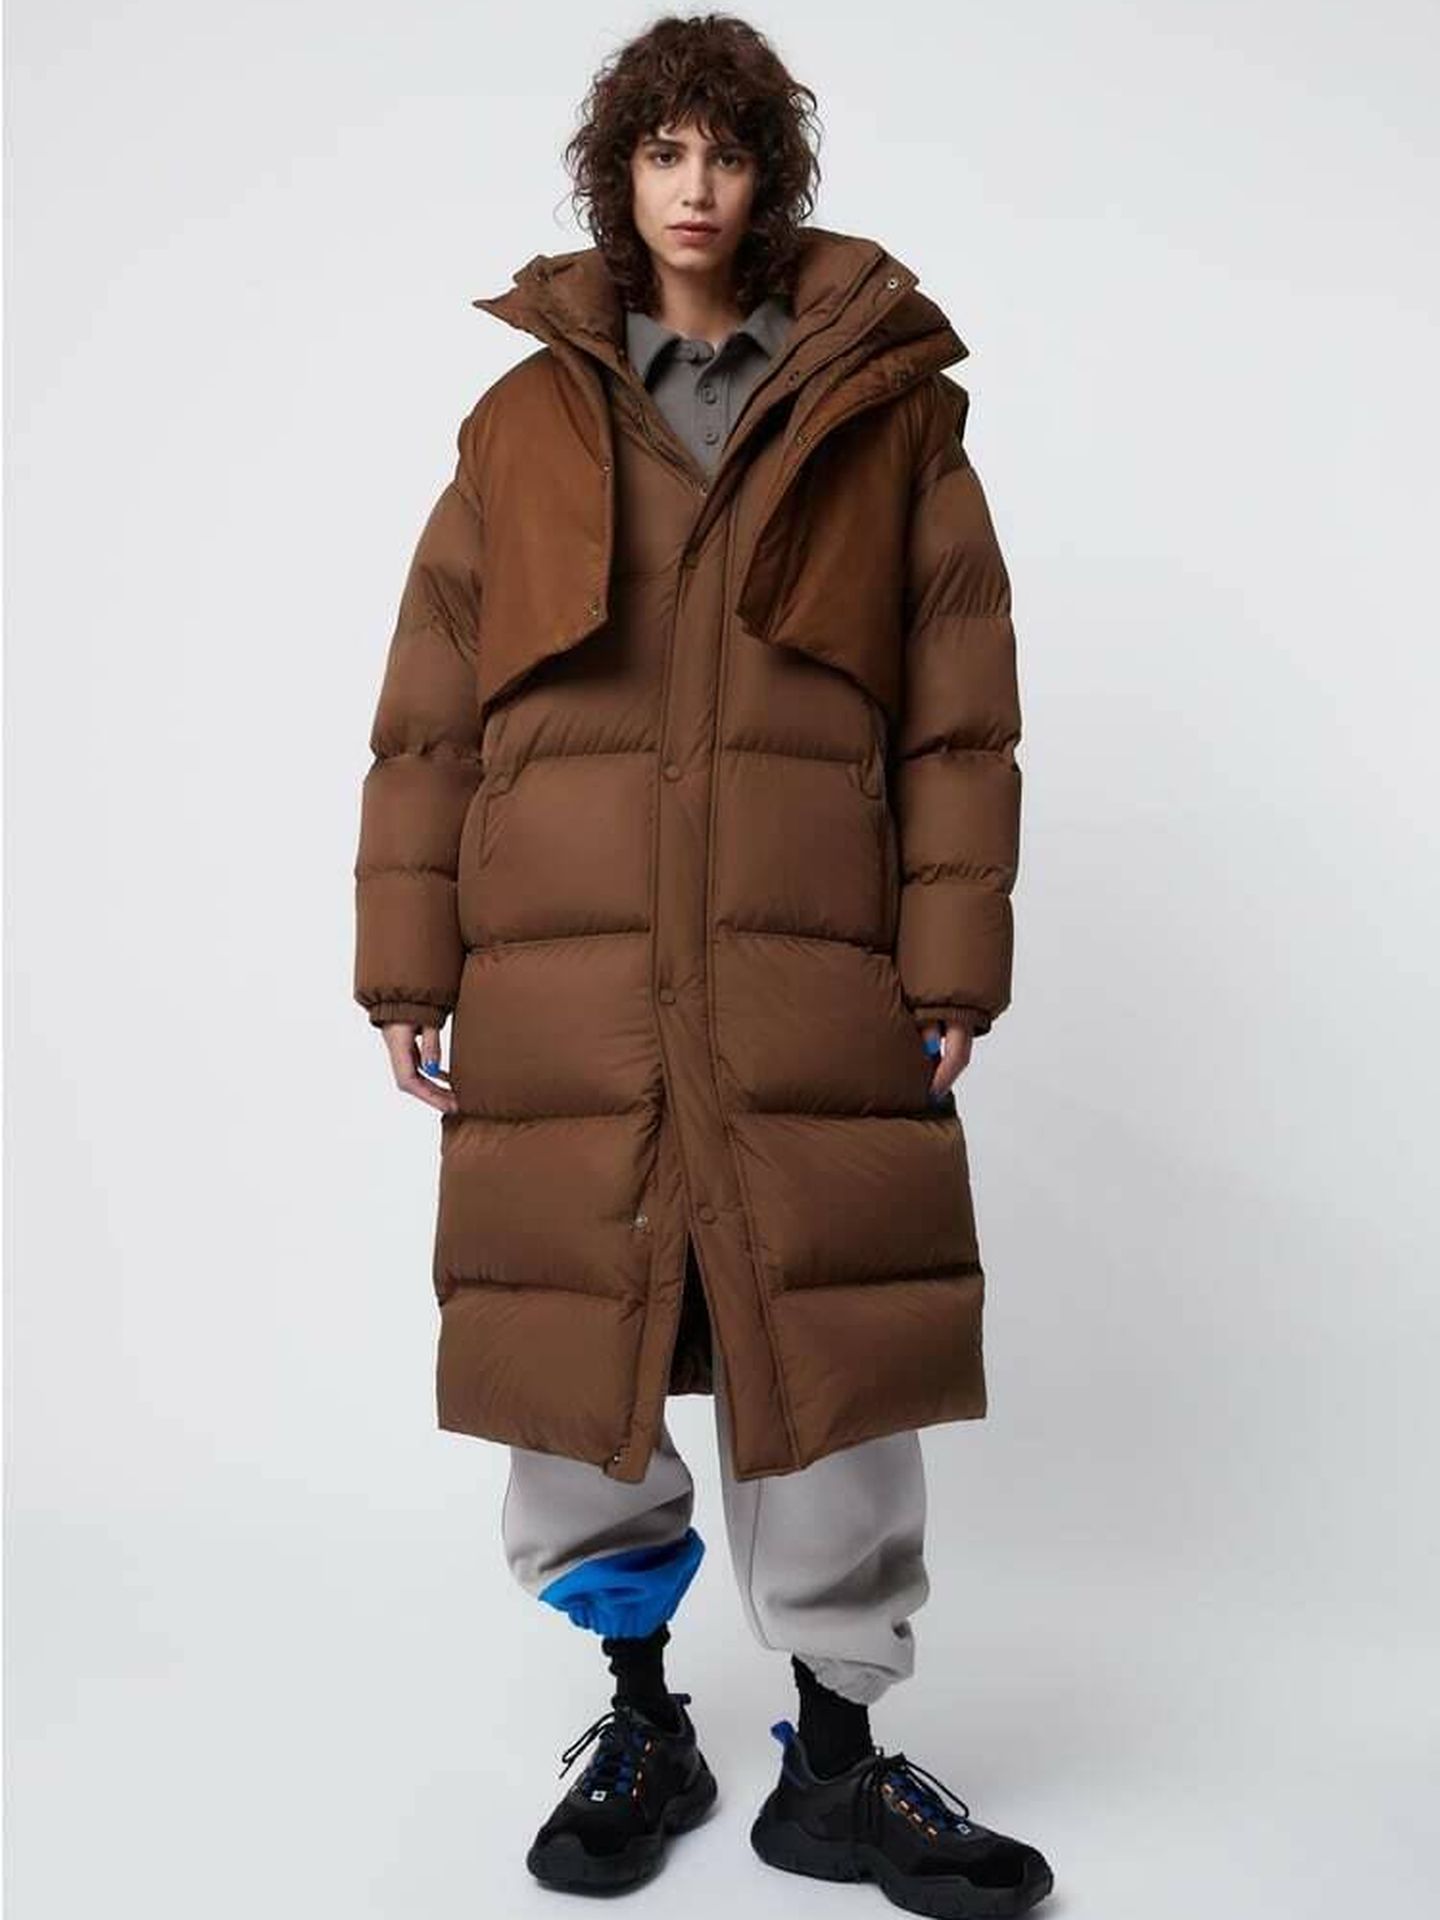 Un abrigo acolchado de la nueva colección de Zara. (Cortesía)